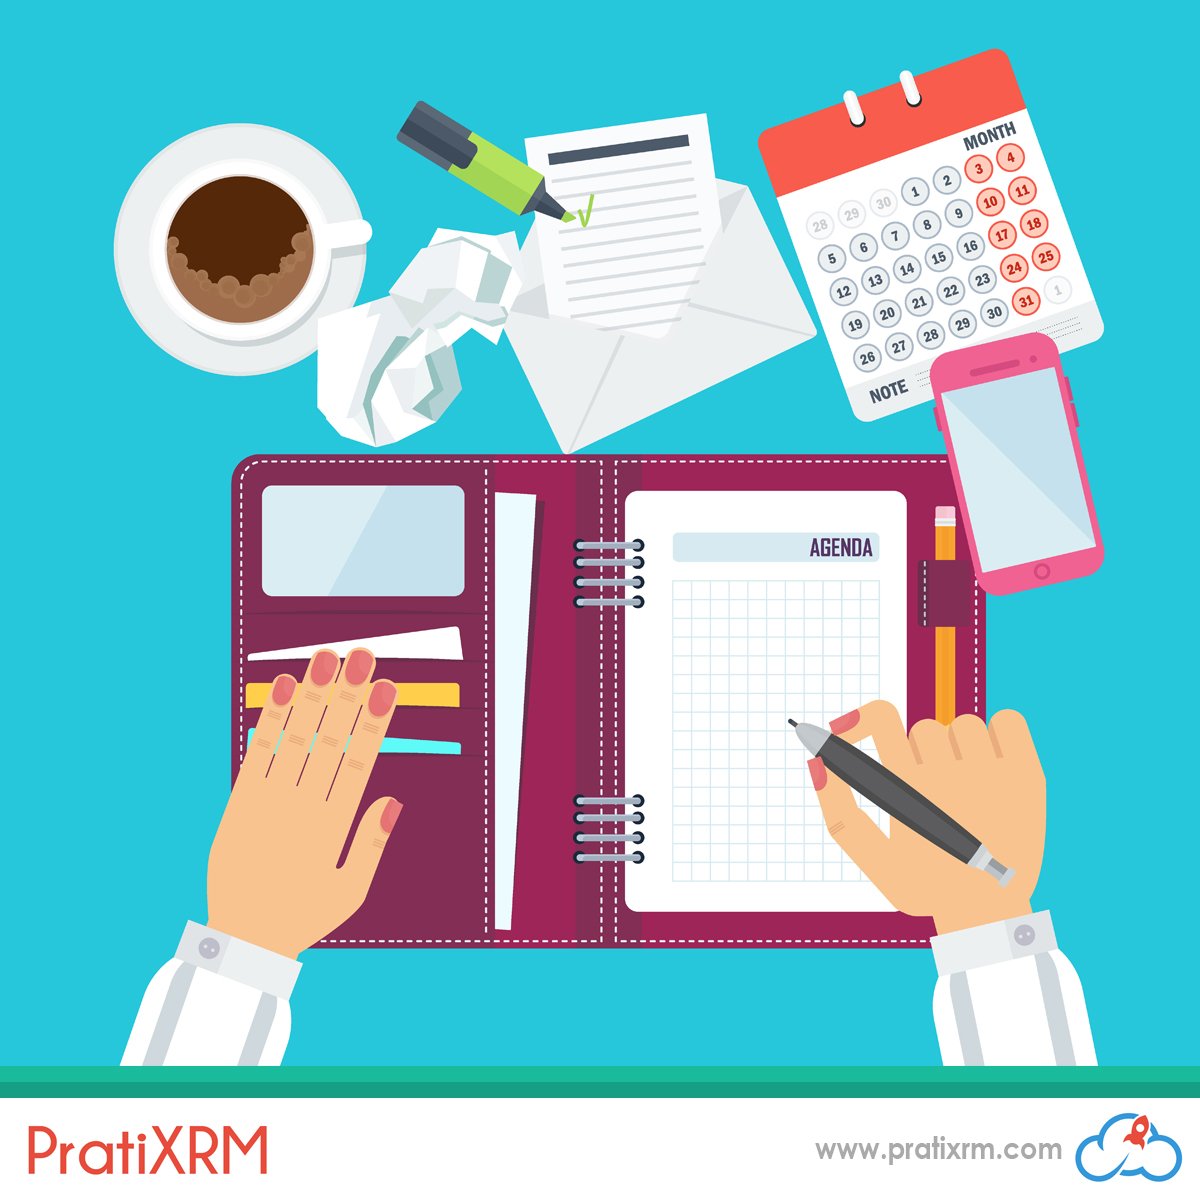 Online CRM Yazılımı PratiXRM kullanıcıları resimdeki objelere ihtiyaç duymazlar. pratixrm.com/online-randevu… #onlinecrm #sanalasistan